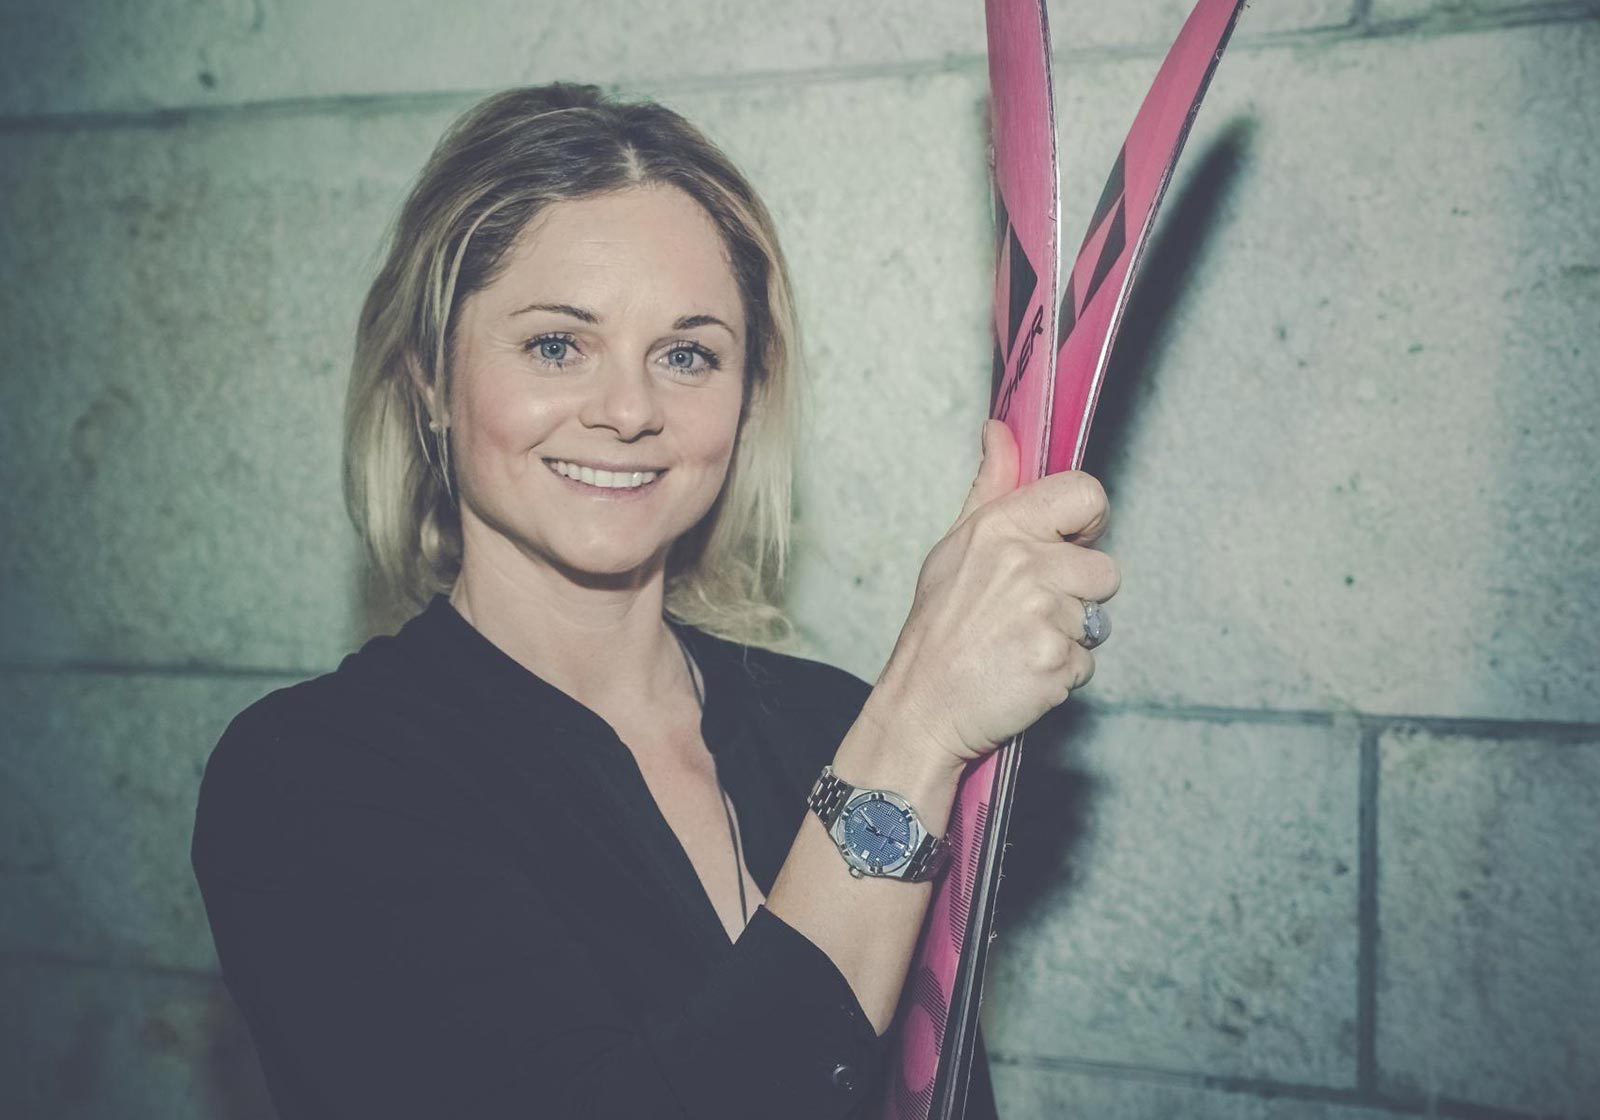 Alpine skier Sandra Lahnsteiner, the new friend of the brand